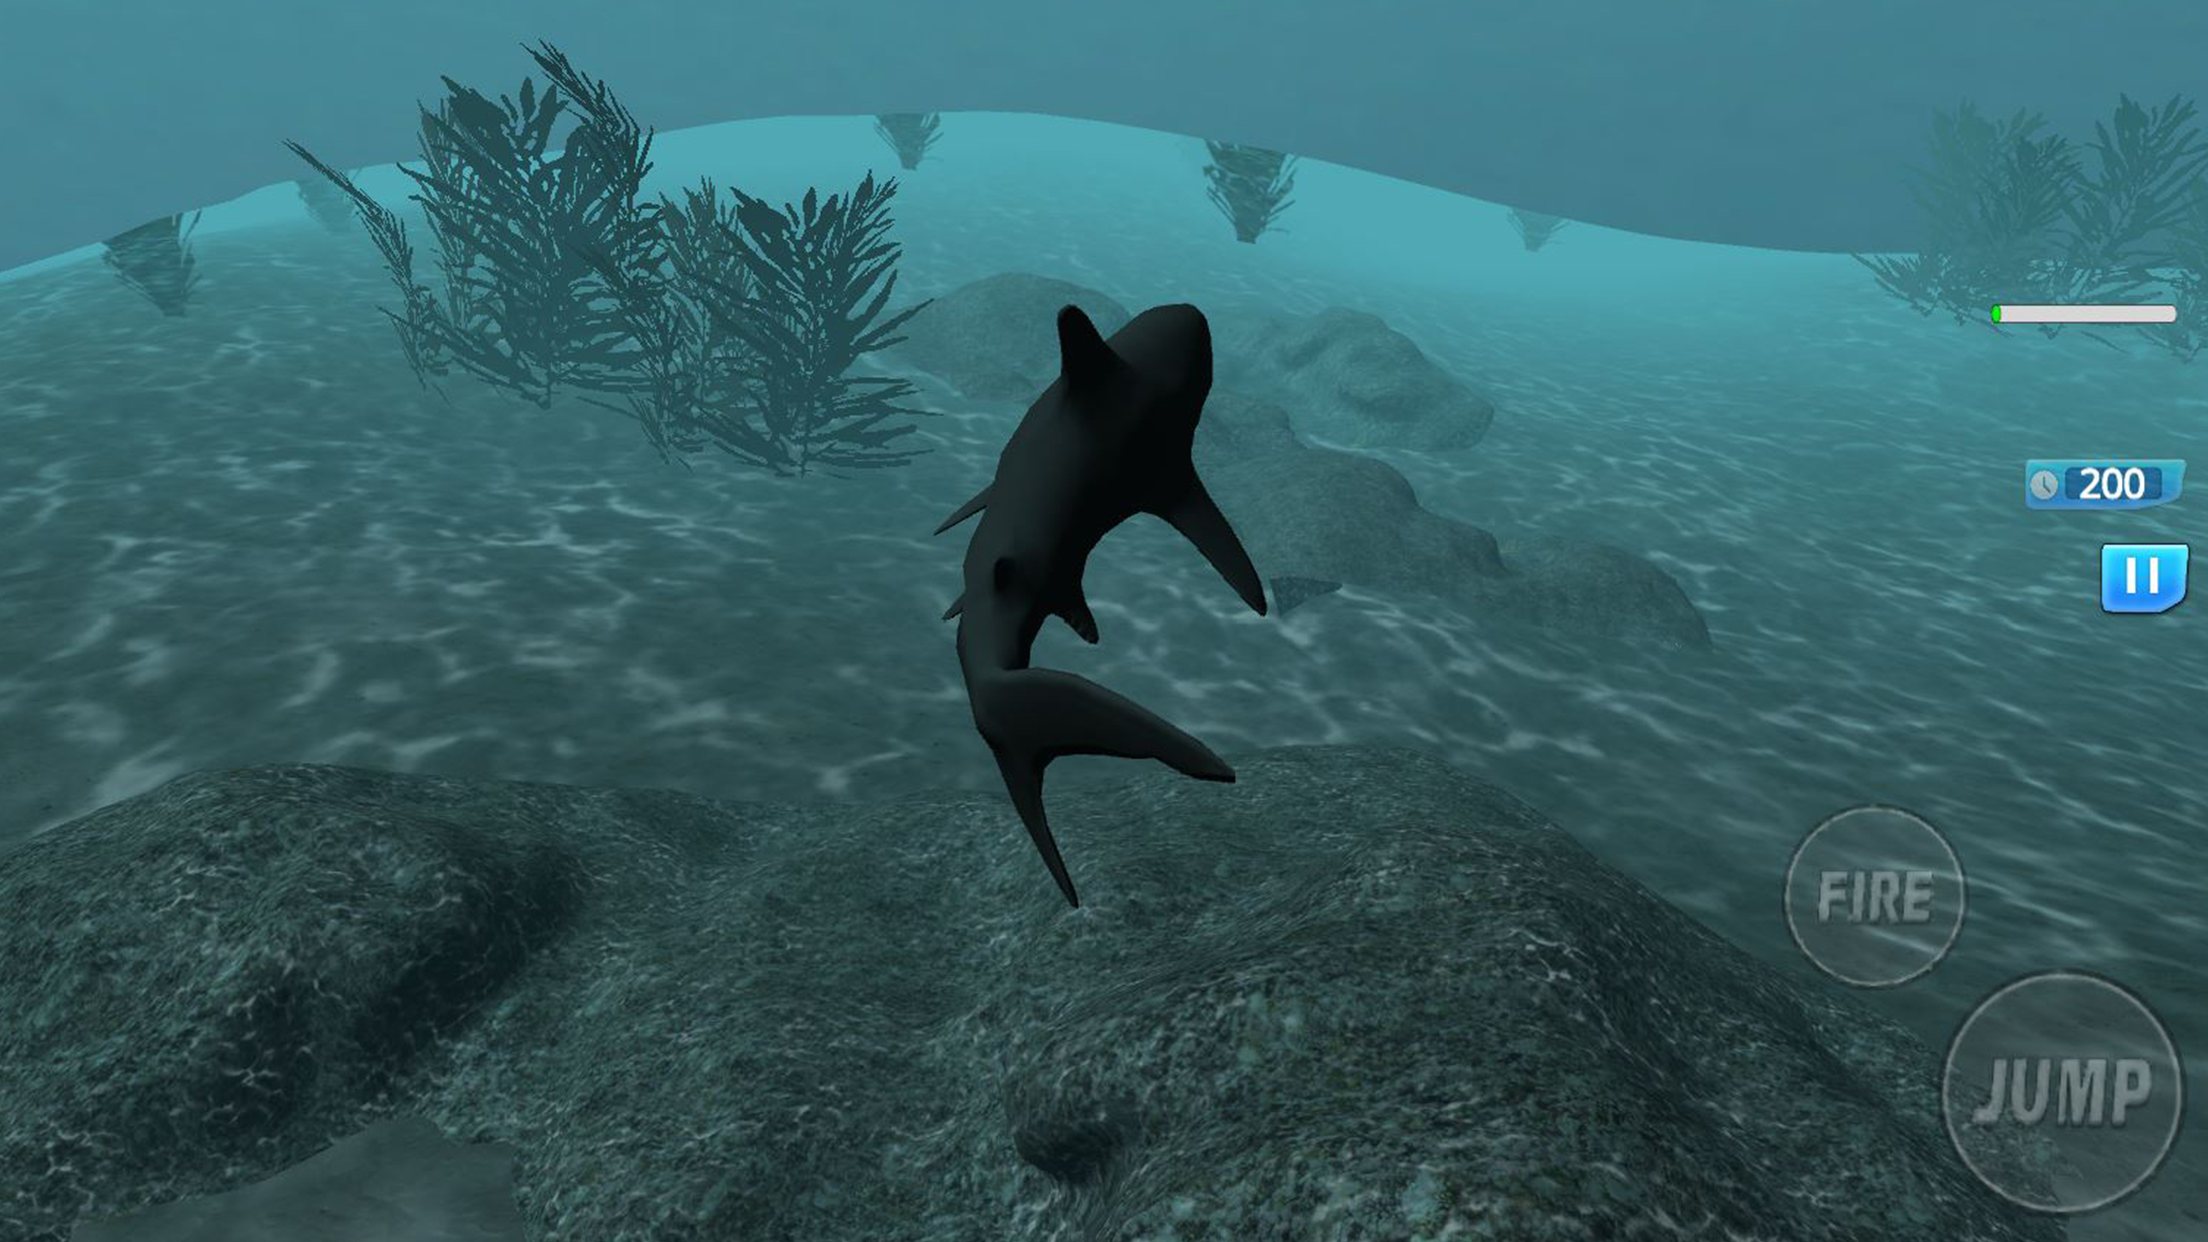 饥饿的鲨鱼动物园模拟游戏 - 动物园之星 - 动物园游戏截图